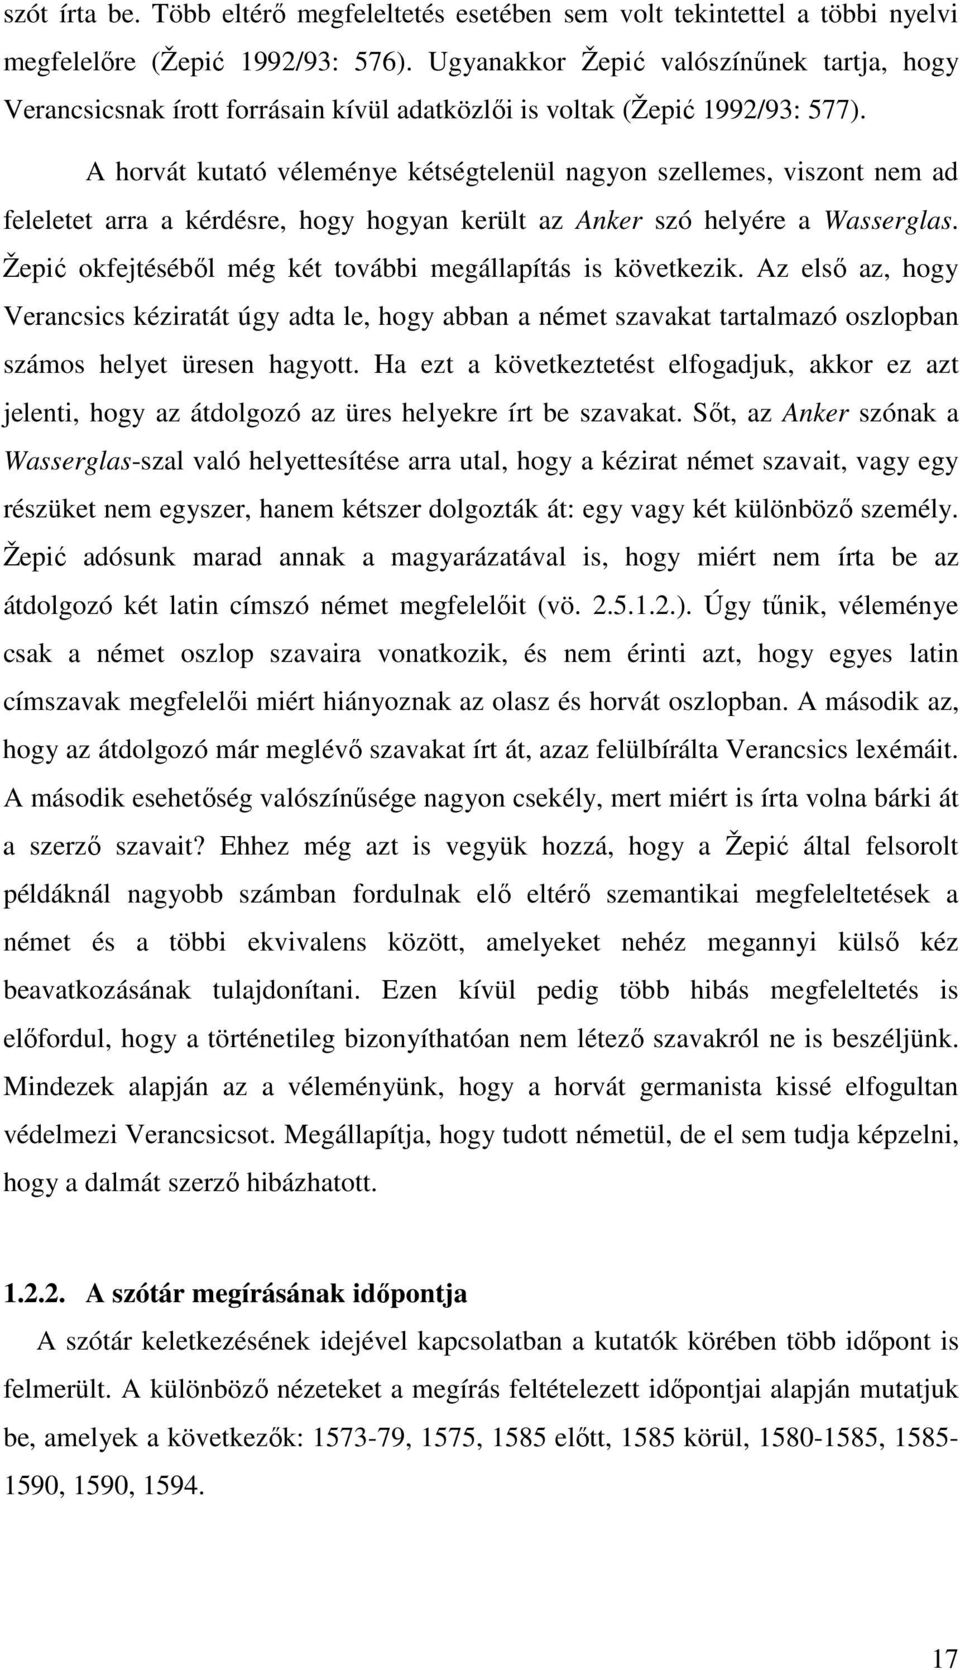 A horvát kutató véleménye kétségtelenül nagyon szellemes, viszont nem ad feleletet arra a kérdésre, hogy hogyan került az Anker szó helyére a Wasserglas.